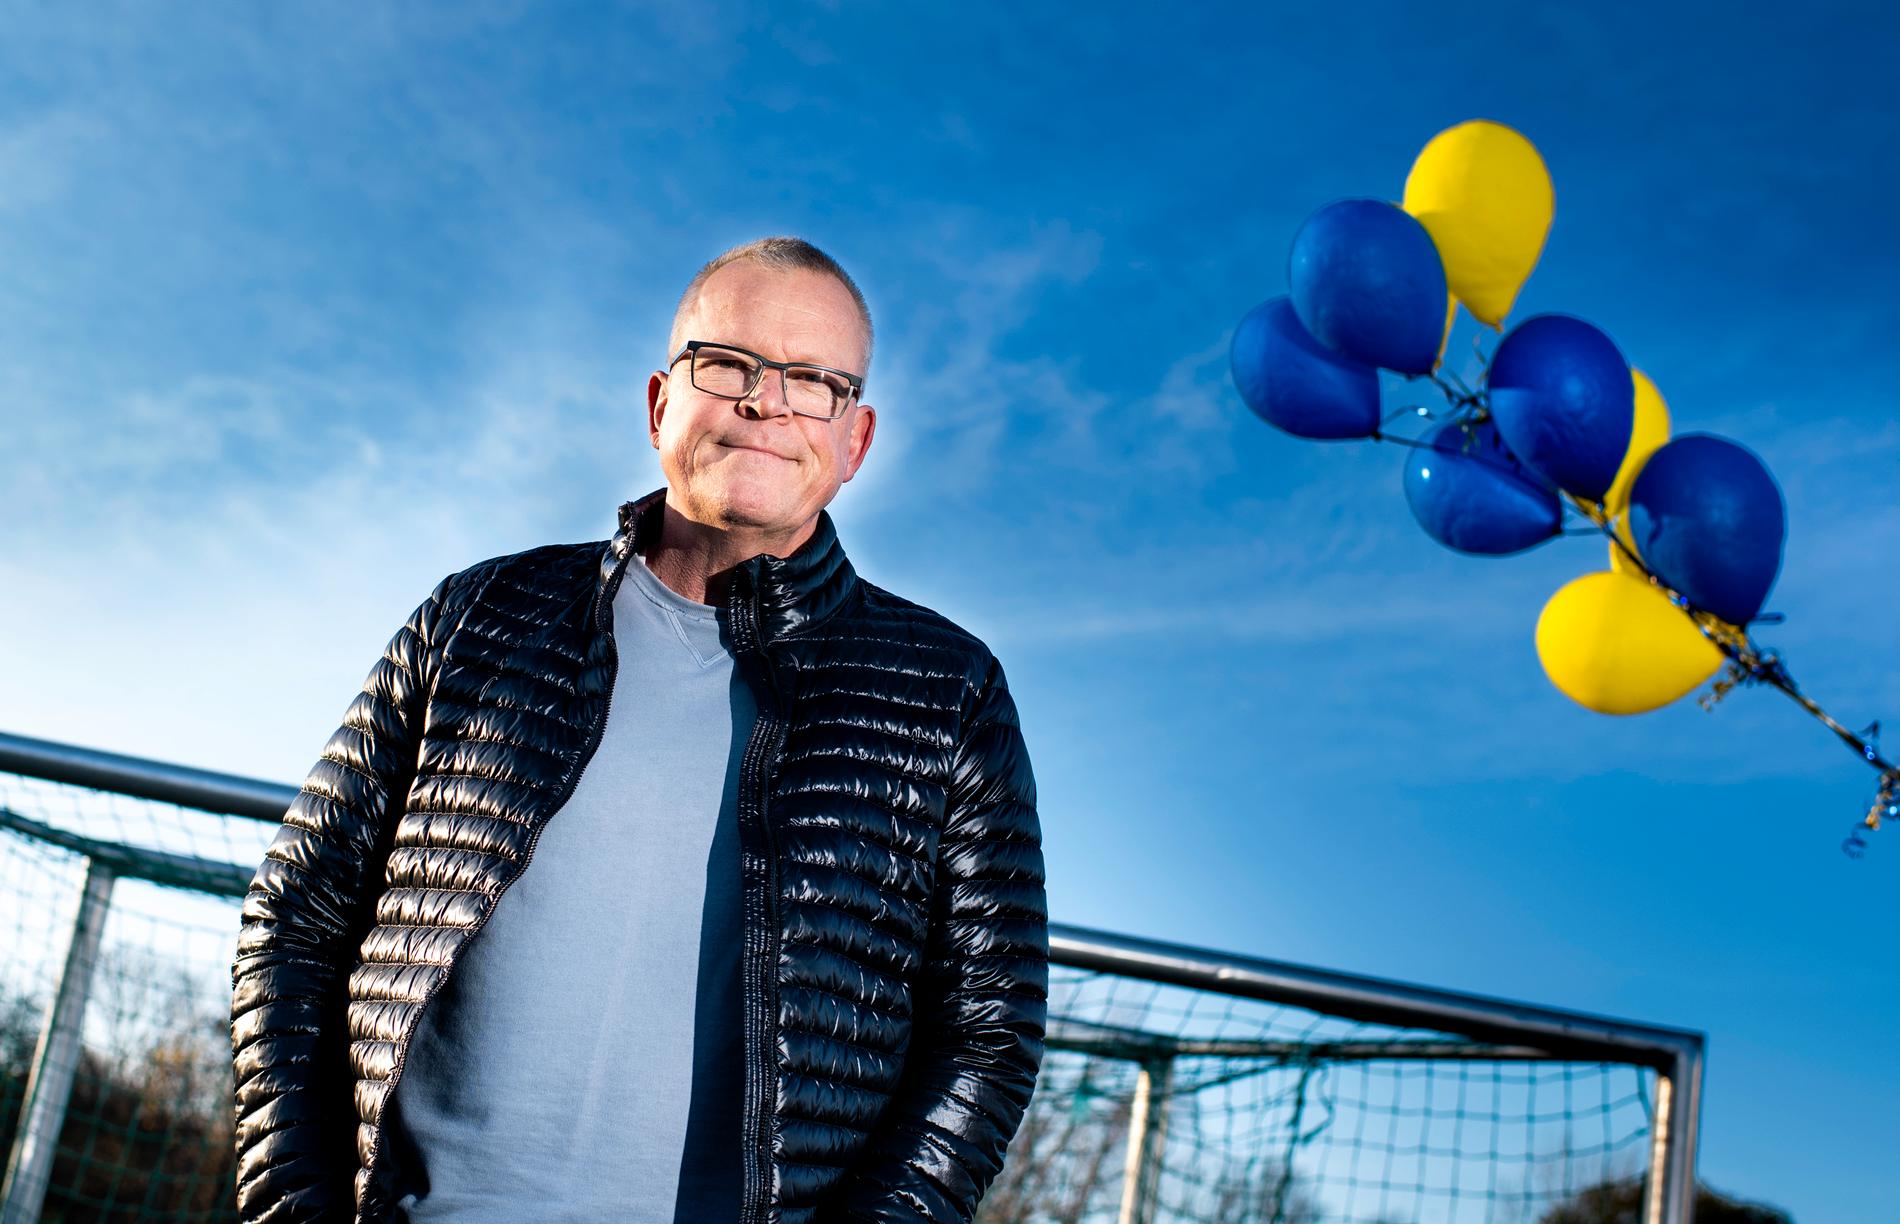 "Min grundinställning i mitt ledarskap är att skapa en miljö där folk är välkomna", säger Janne Andersson.